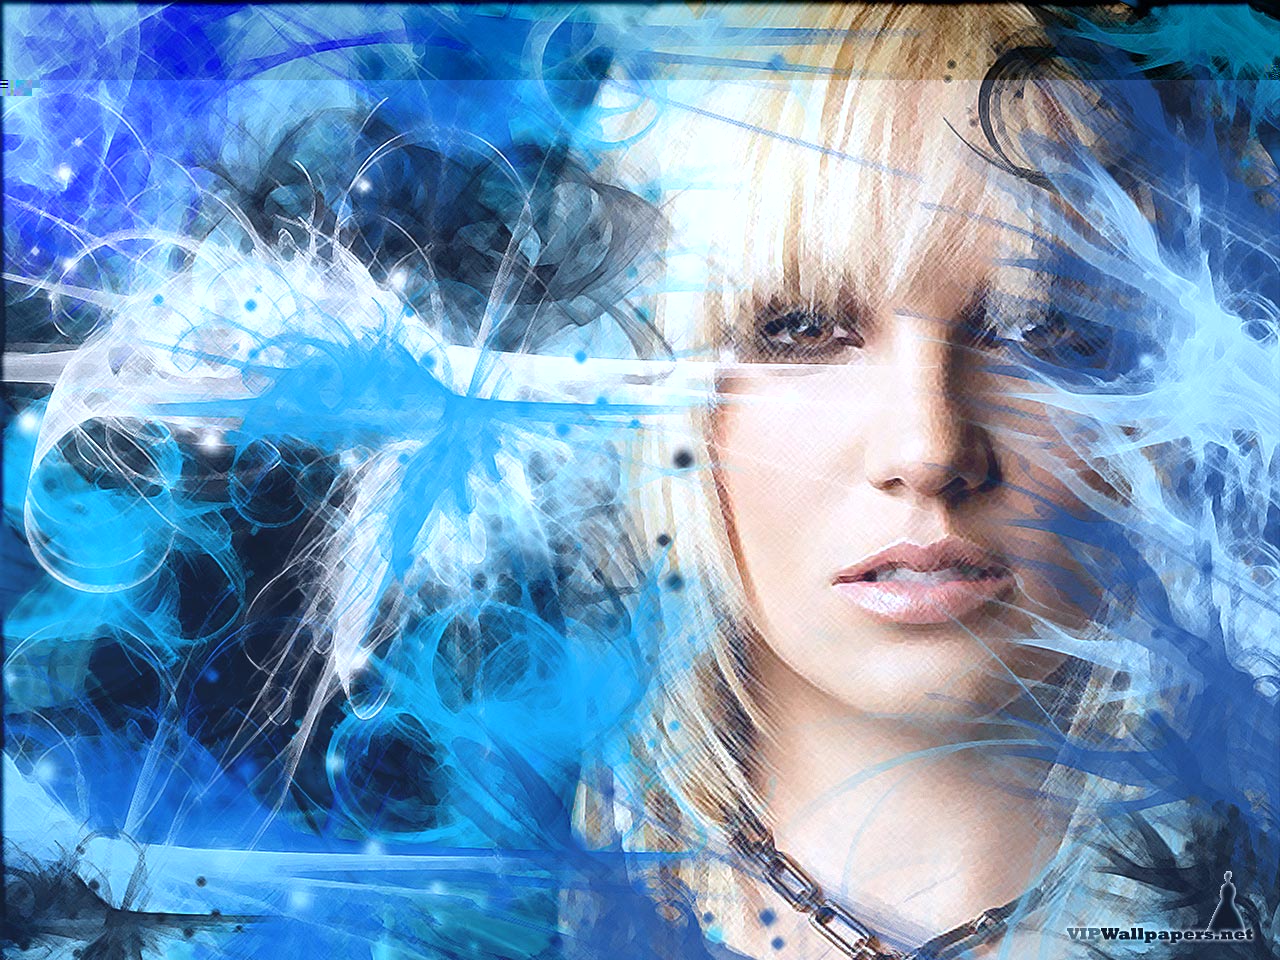 Baixe gratuitamente a imagem Música, Britney Spears na área de trabalho do seu PC